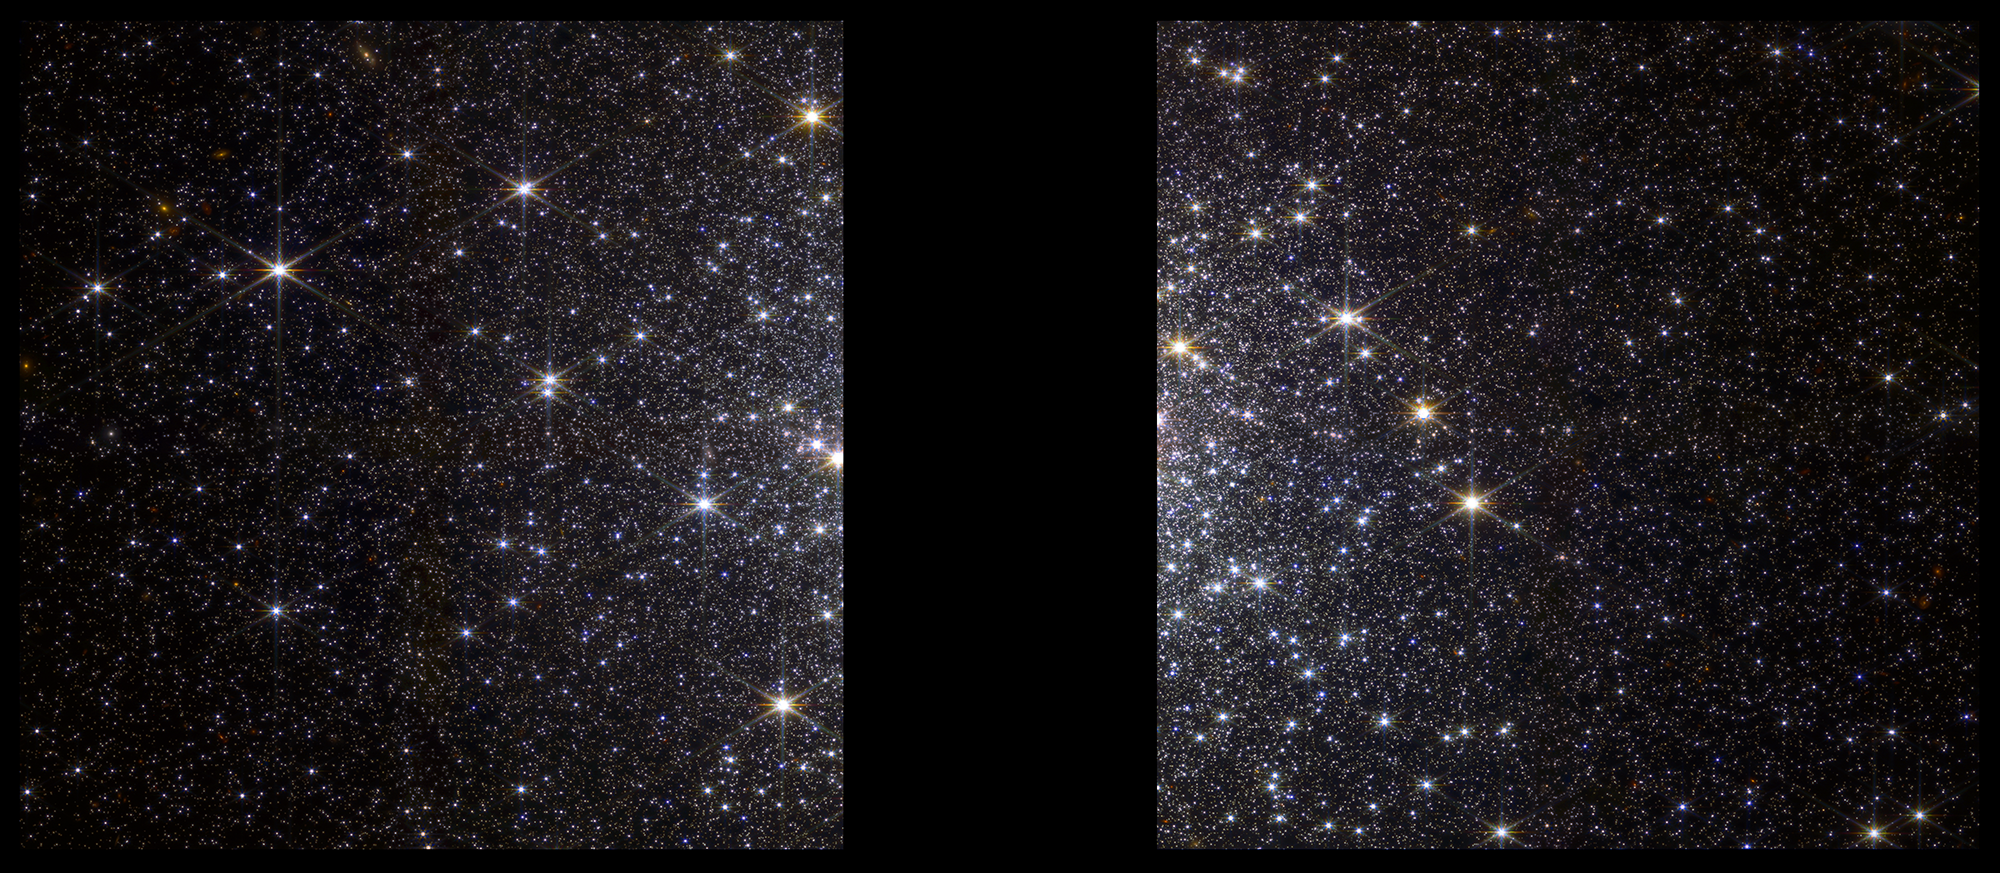 Na ilustracji: Obraz gromady kulistej Messier 92 (M92) o przekątnej 5’ (~39 l.św.) uchwycony w Teleskopie Webba przez kamerę NIRCam w bliskiej podczerwieni. Czarny pas w centrum zdjęcia jest „przerwą techniczną” pomijającą samo centrum M92, które jest zbyt jasne, aby jednocześnie było możliwe sfotografowanie z zewnętrznymi obszarami tej gromady. Jest to obraz złożony z naświetlań w czterech następujących filtrach o średnich długościach fali 0,9μm (pokazany jako kolor niebieski), 1,5μm (kolor niebieskozielony), 2,77μm (kolor żółty) i 4,44μm (kolor czerwony). Źródło: NASA, ESA, CSA, A. Pagan (STScI)